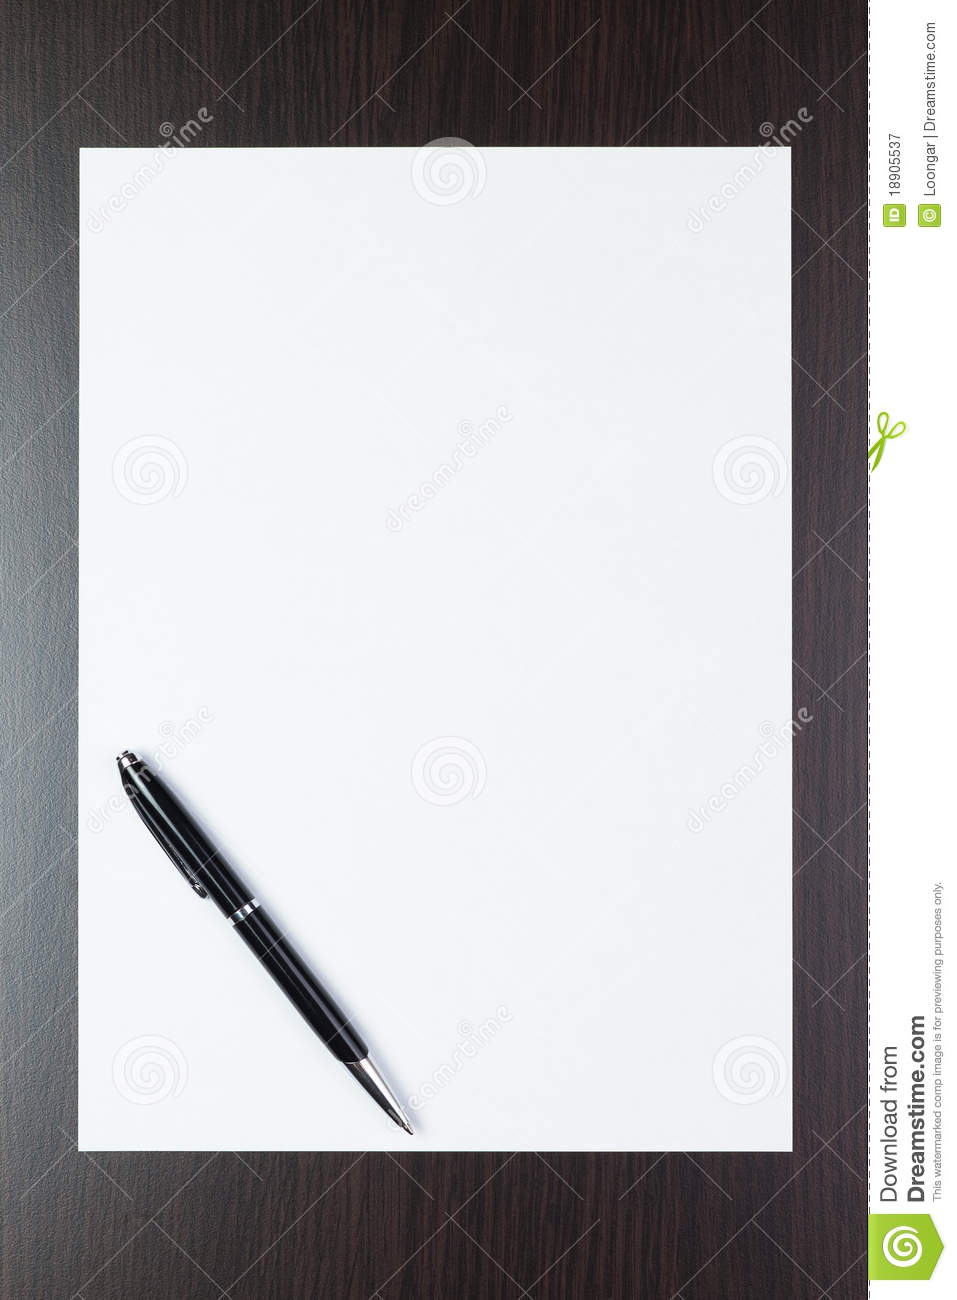 foglio-di-carta-bianco-sulla-tabella-con-una-penna-18905537.jpg